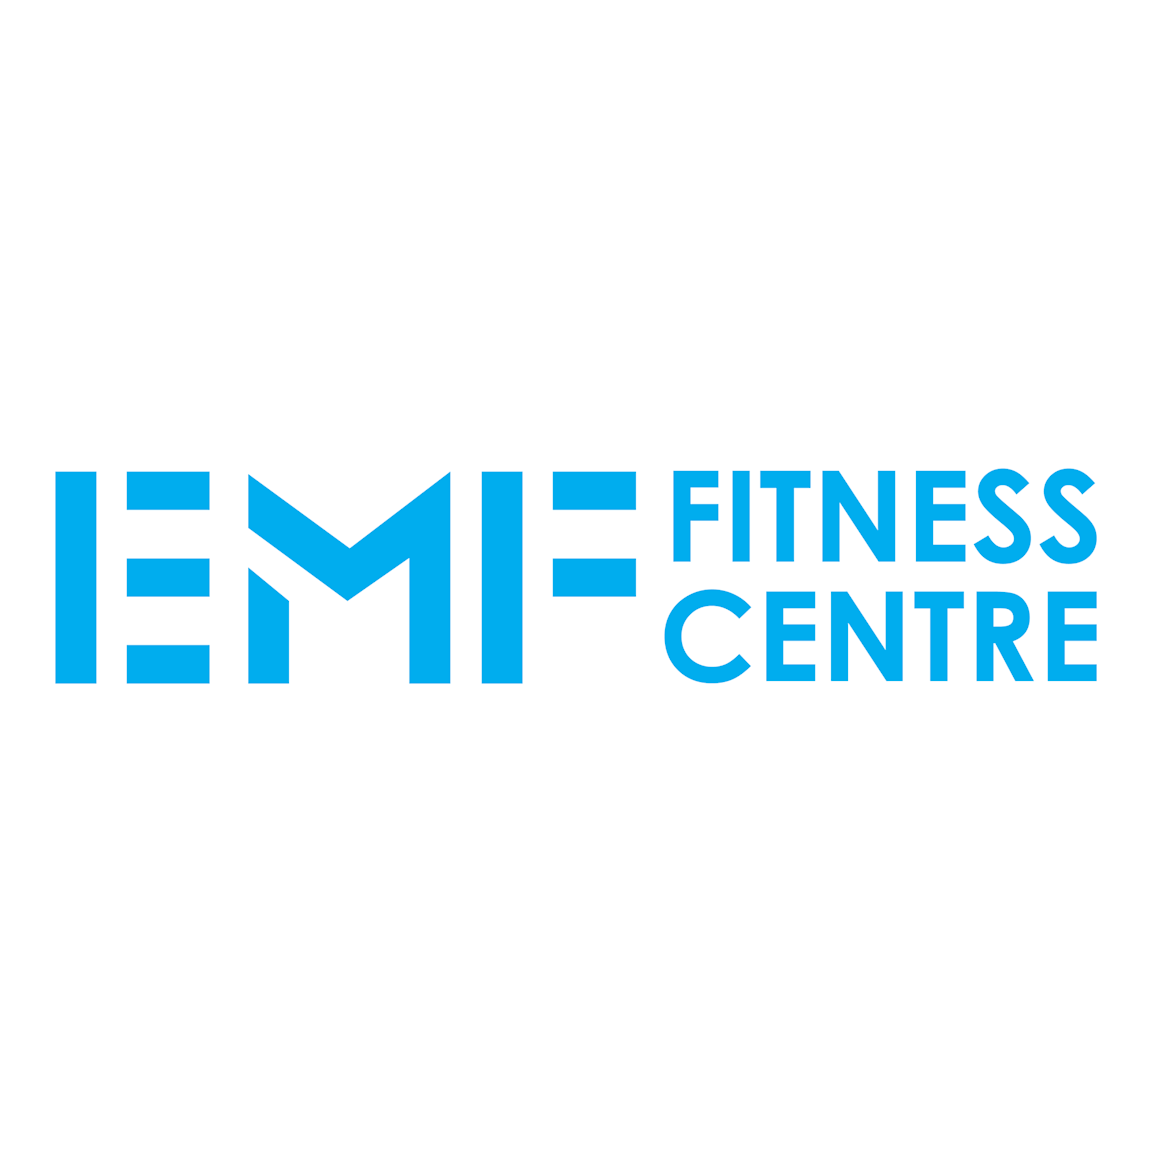 EMF Fitness Centre at Westfield Kotara